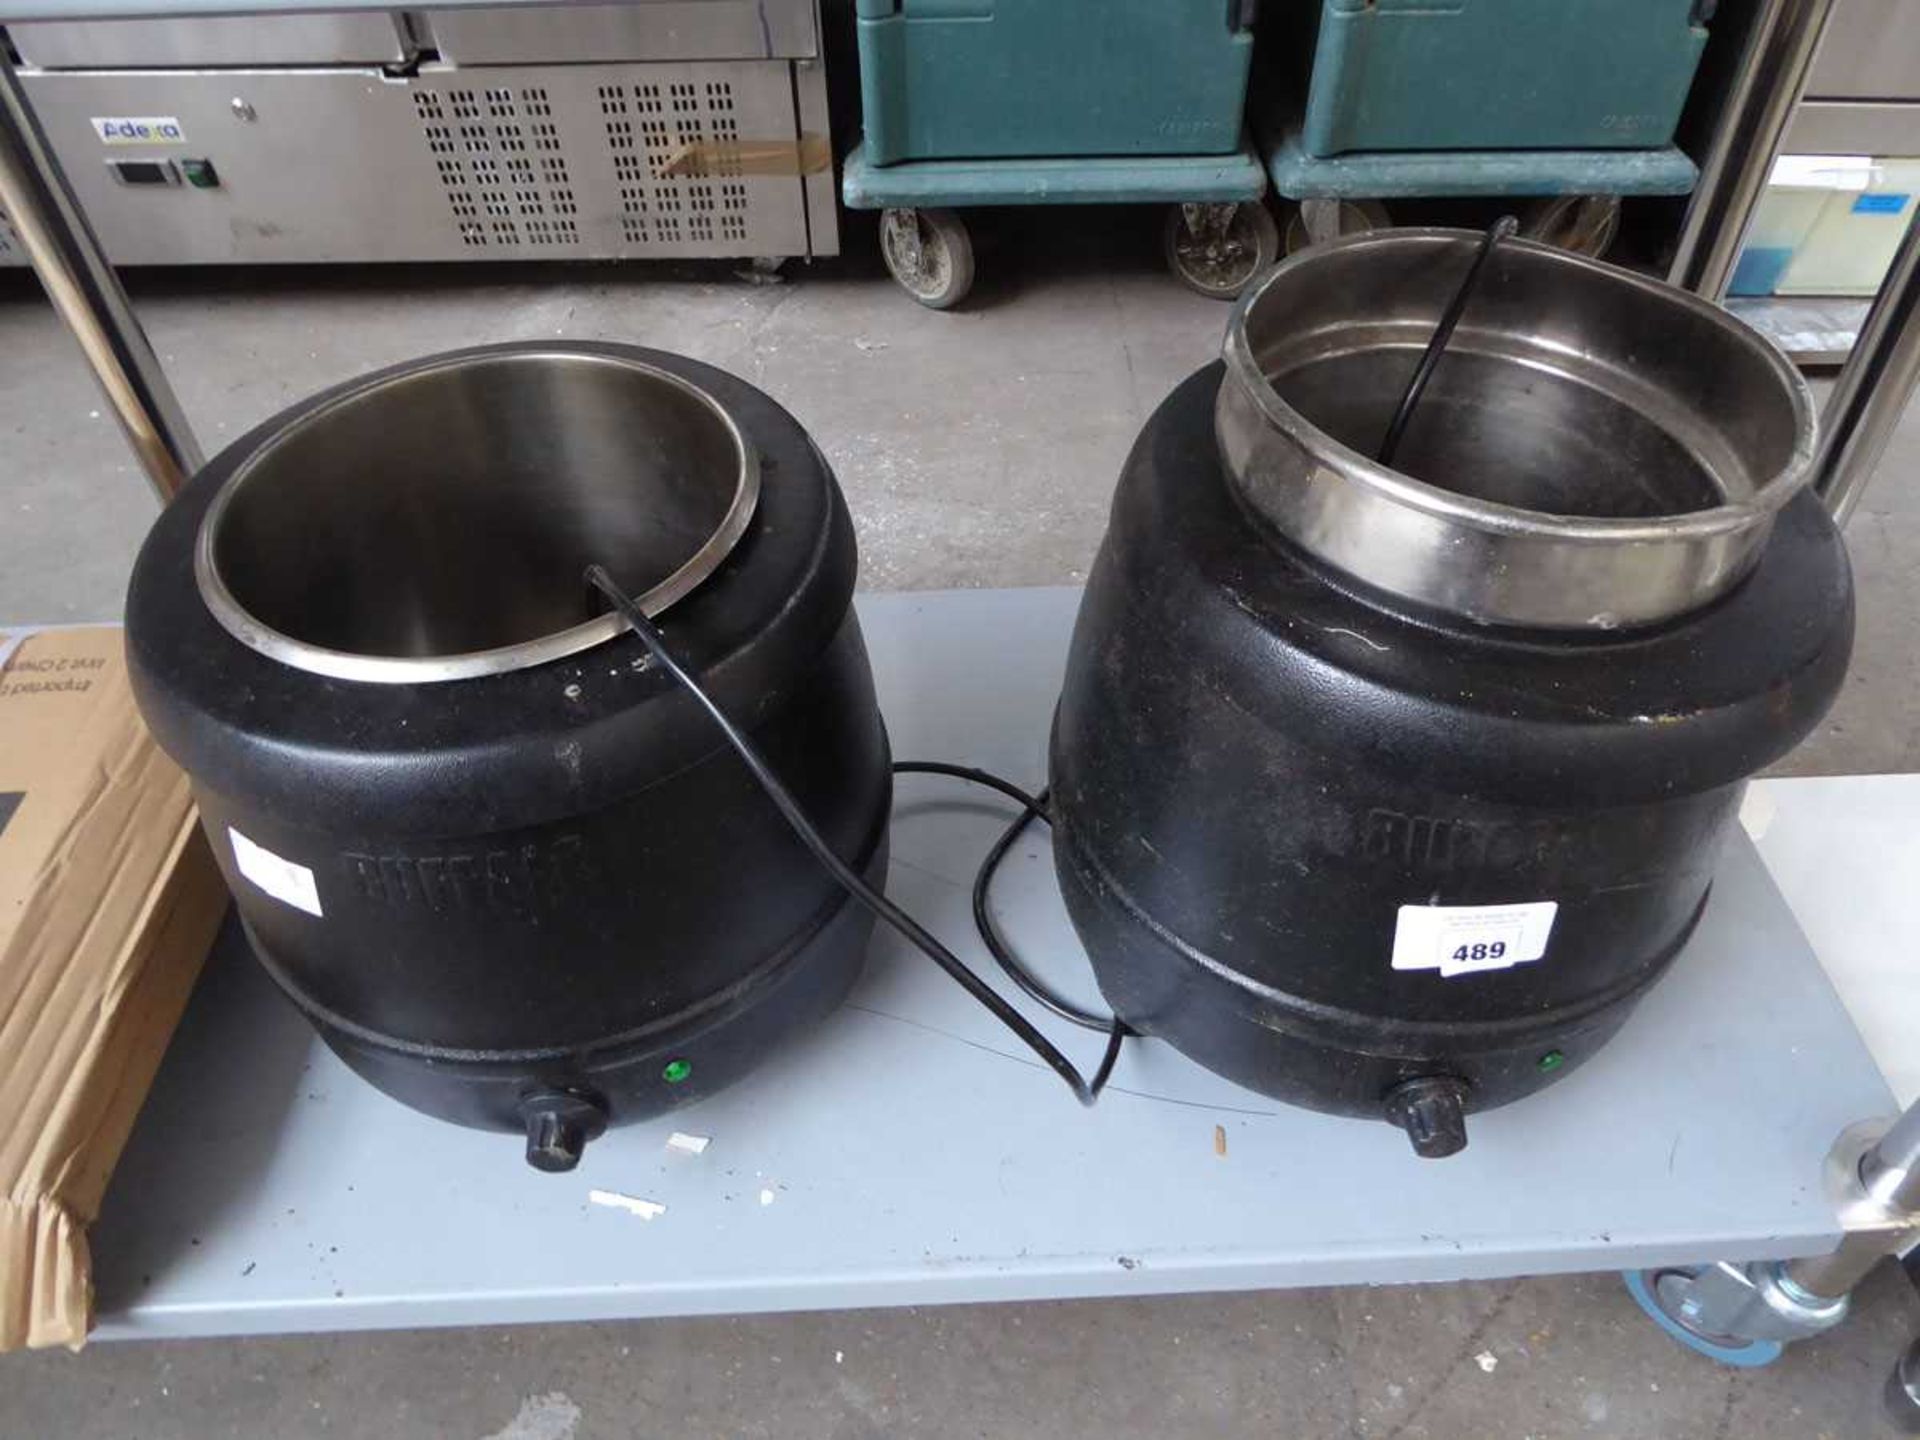 +VAT 2 Buffalo soup kettles